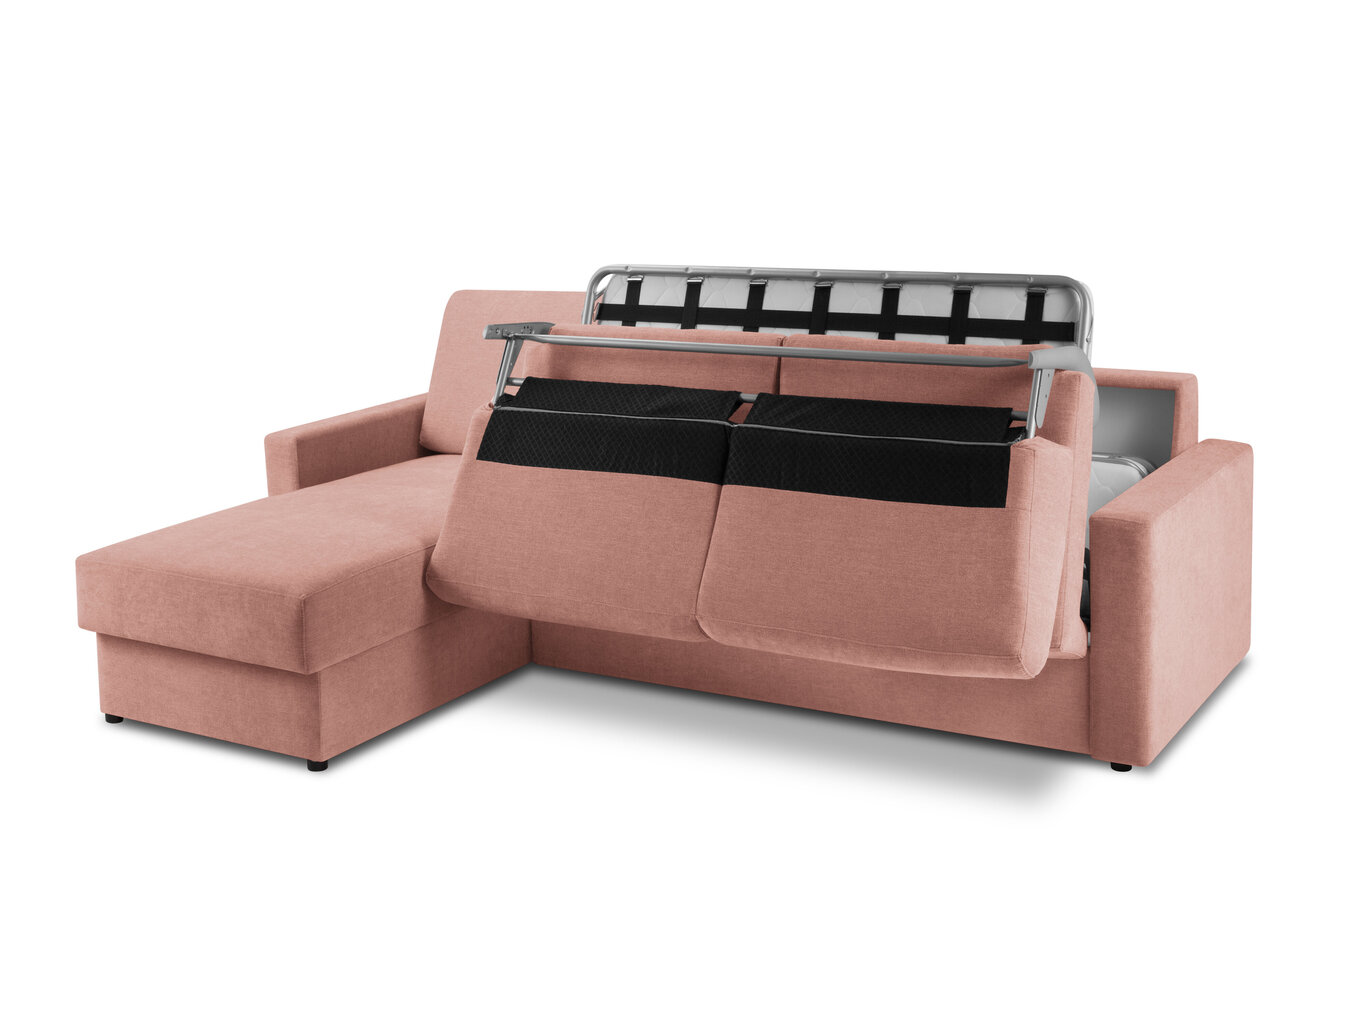 Stūra dīvāns Windsor&Co Portia S, rozā cena un informācija | Stūra dīvāni | 220.lv